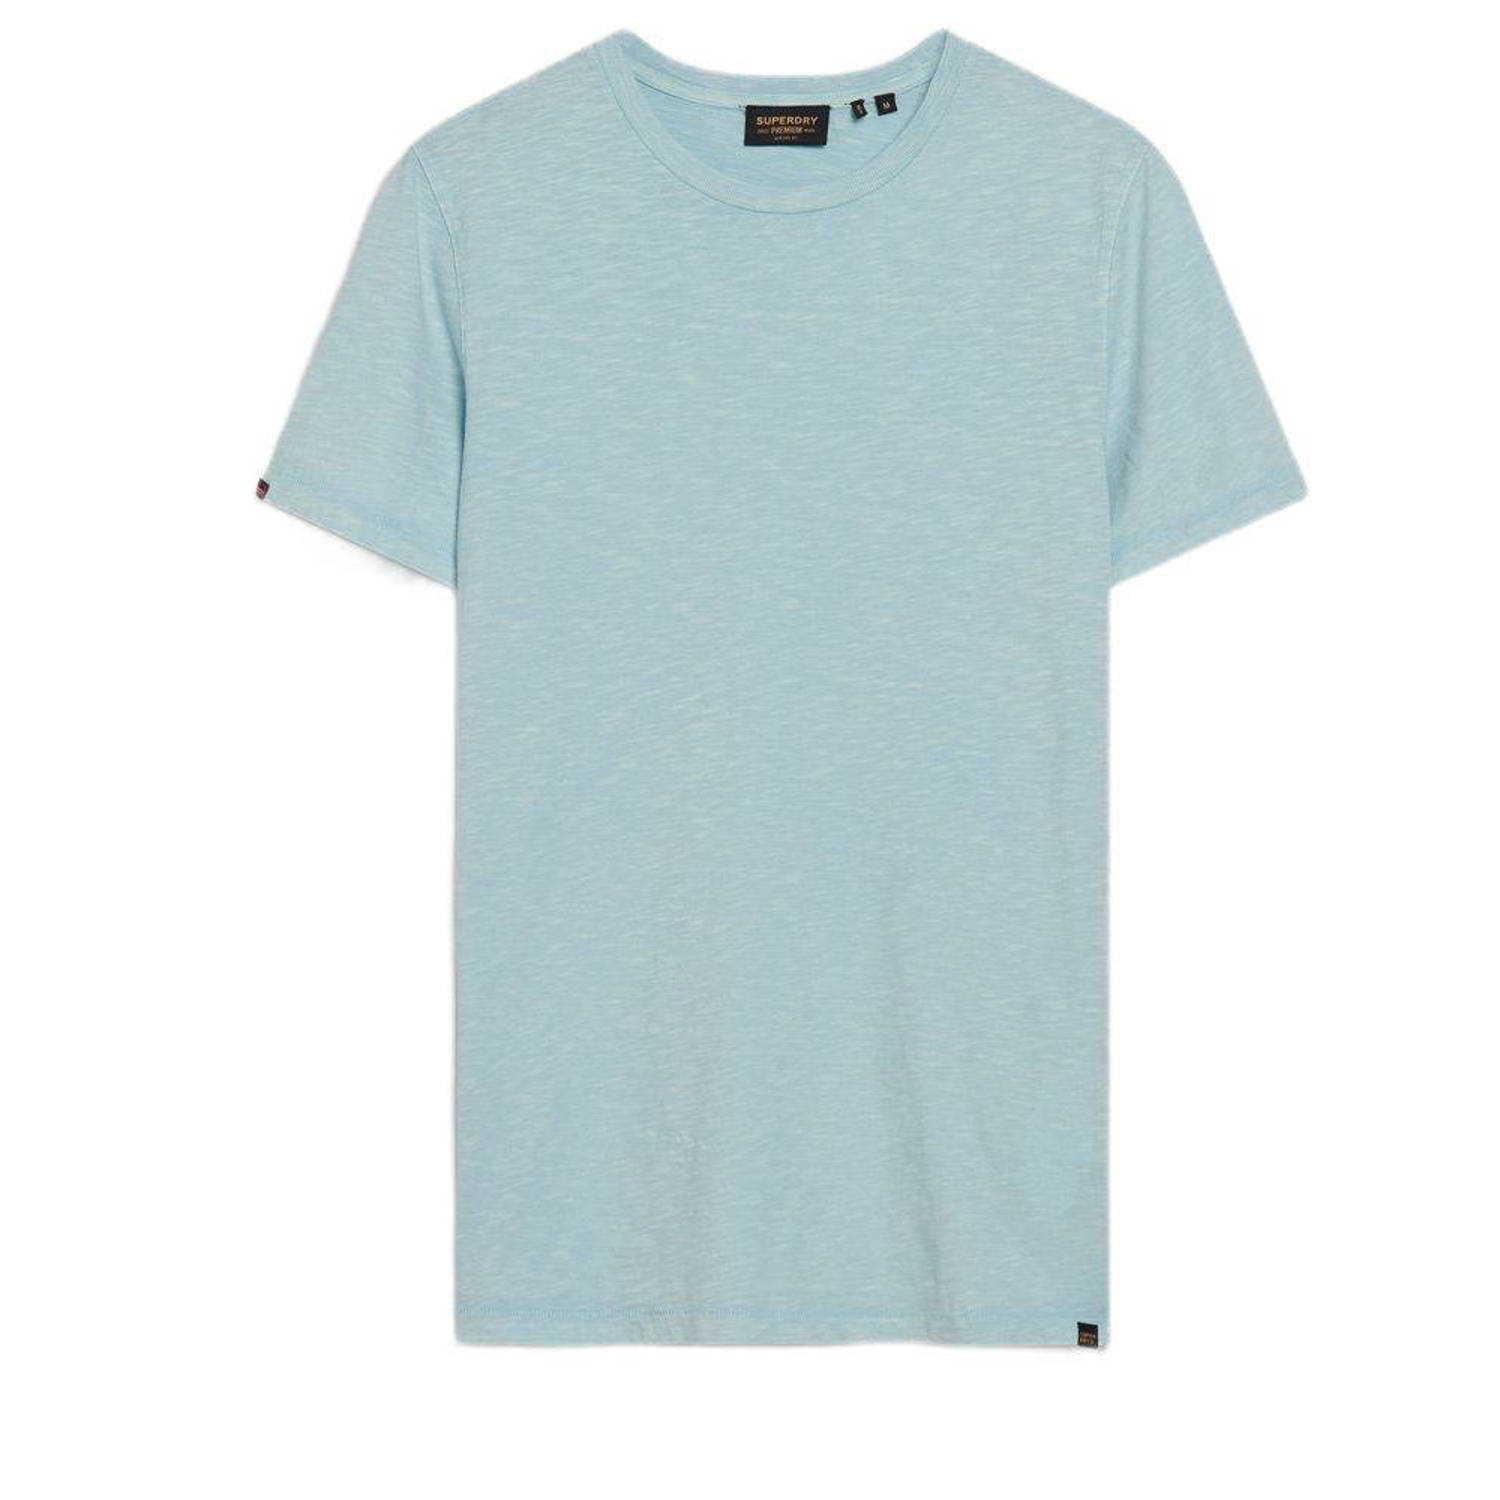 Superdry gemêleerd T-shirt lichtblauw